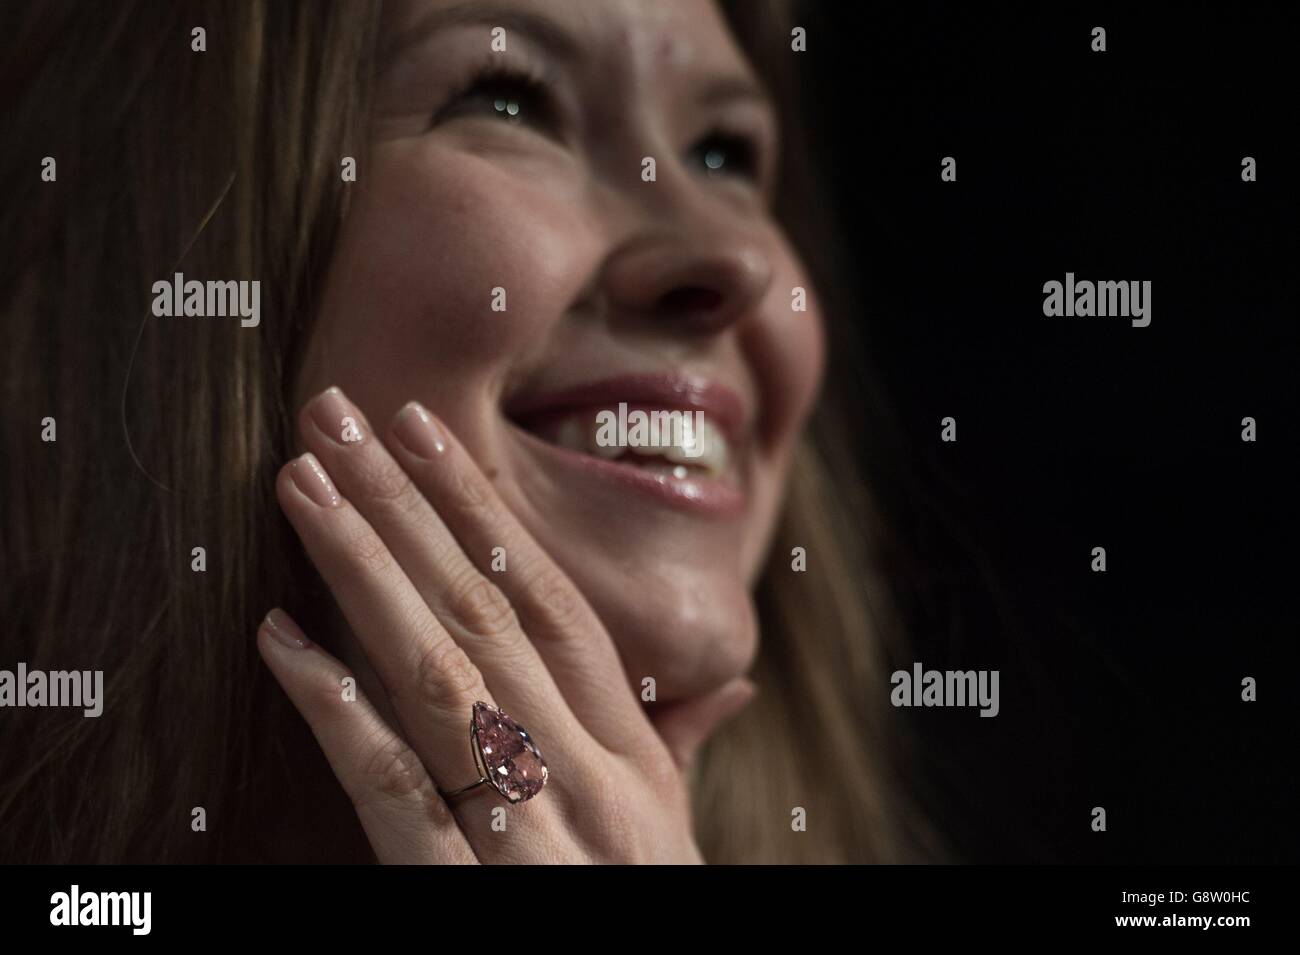 Ein Angestellter des Auktionshauses Sotheby's in London modelliert einen seltenen 'Fancy Vivid Pink' Diamanten namens 'Unique Pink', der im Mai in Genf zum Verkauf kommen wird, 15.38 Karat wiegt und voraussichtlich rund 28-38 Millionen Dollar einbringt. Stockfoto